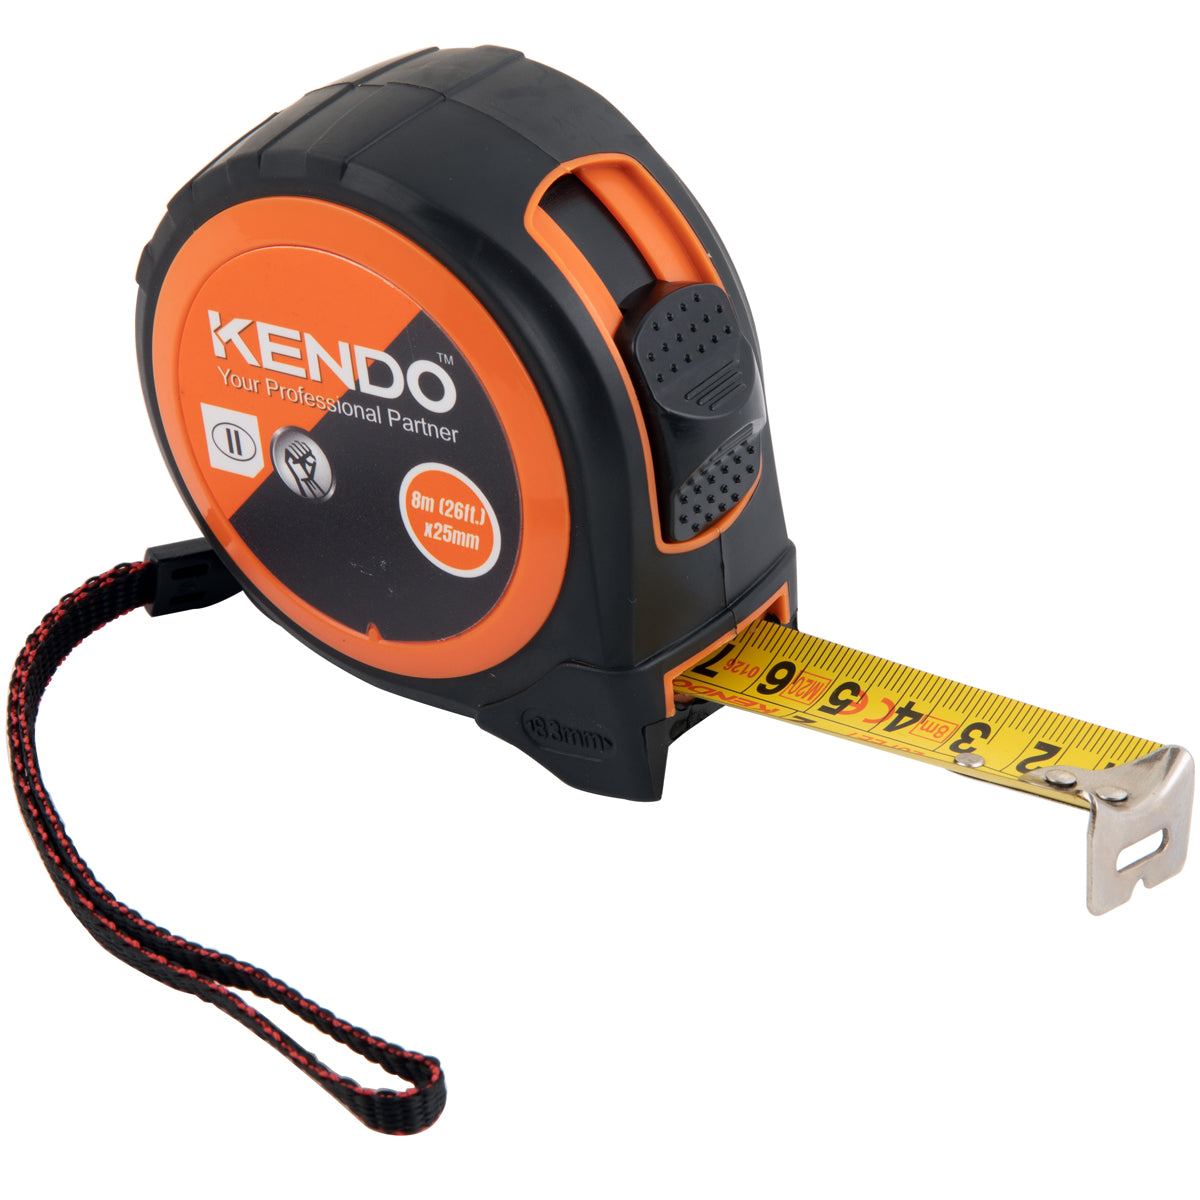 Kendo Metric & Inch Tape Measure 8m/26ft